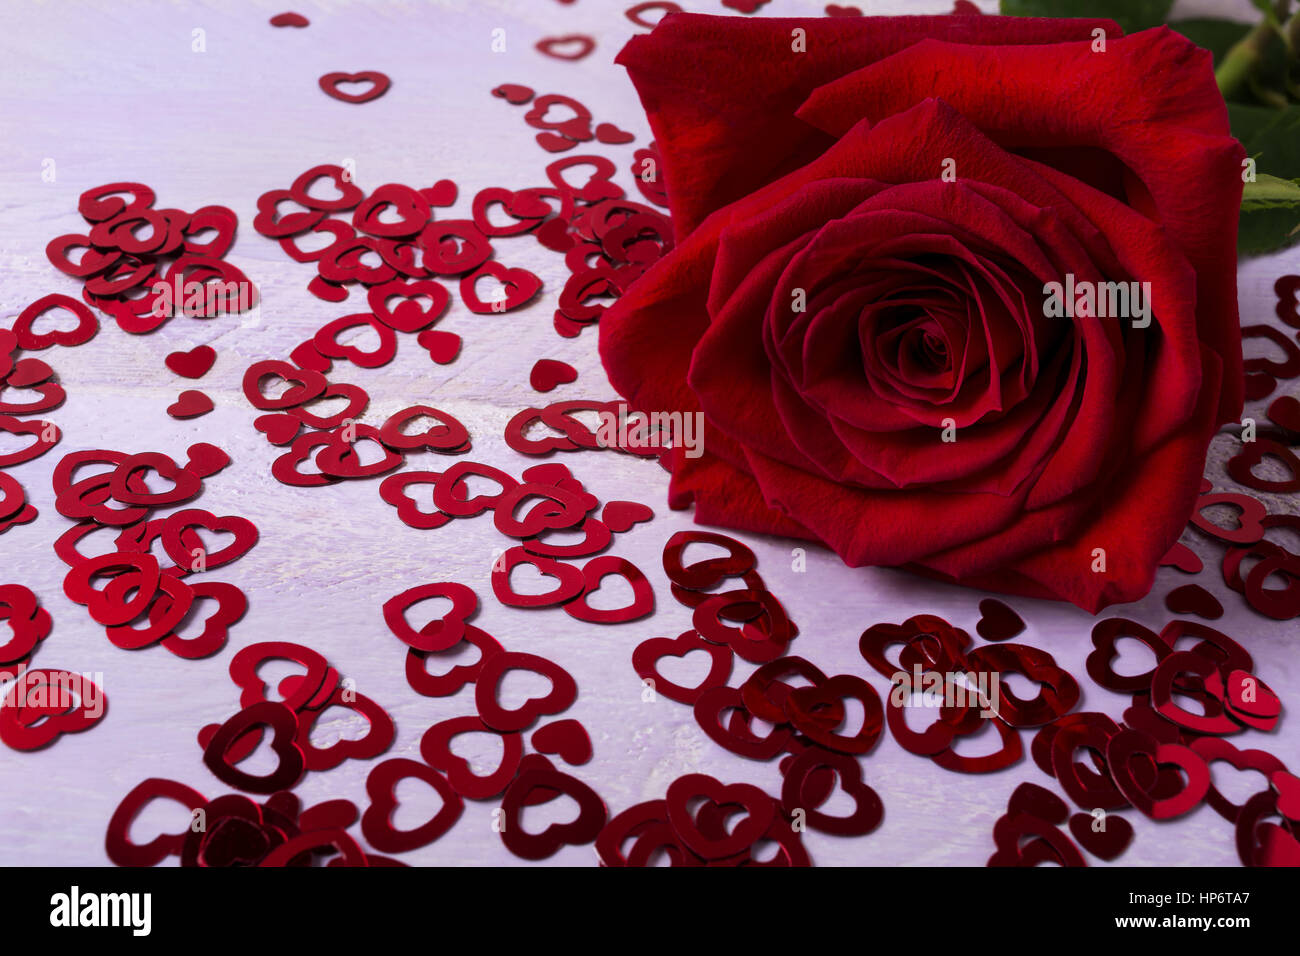 Verlieben Sie sich in Liebe Konzept mit schönen roten Rose auf dem kleinen Herzen Hintergrund. Elegante Hochzeitseinladung. Valentinstag-Grußkarte. Kopieren Sie Raum. Stockfoto